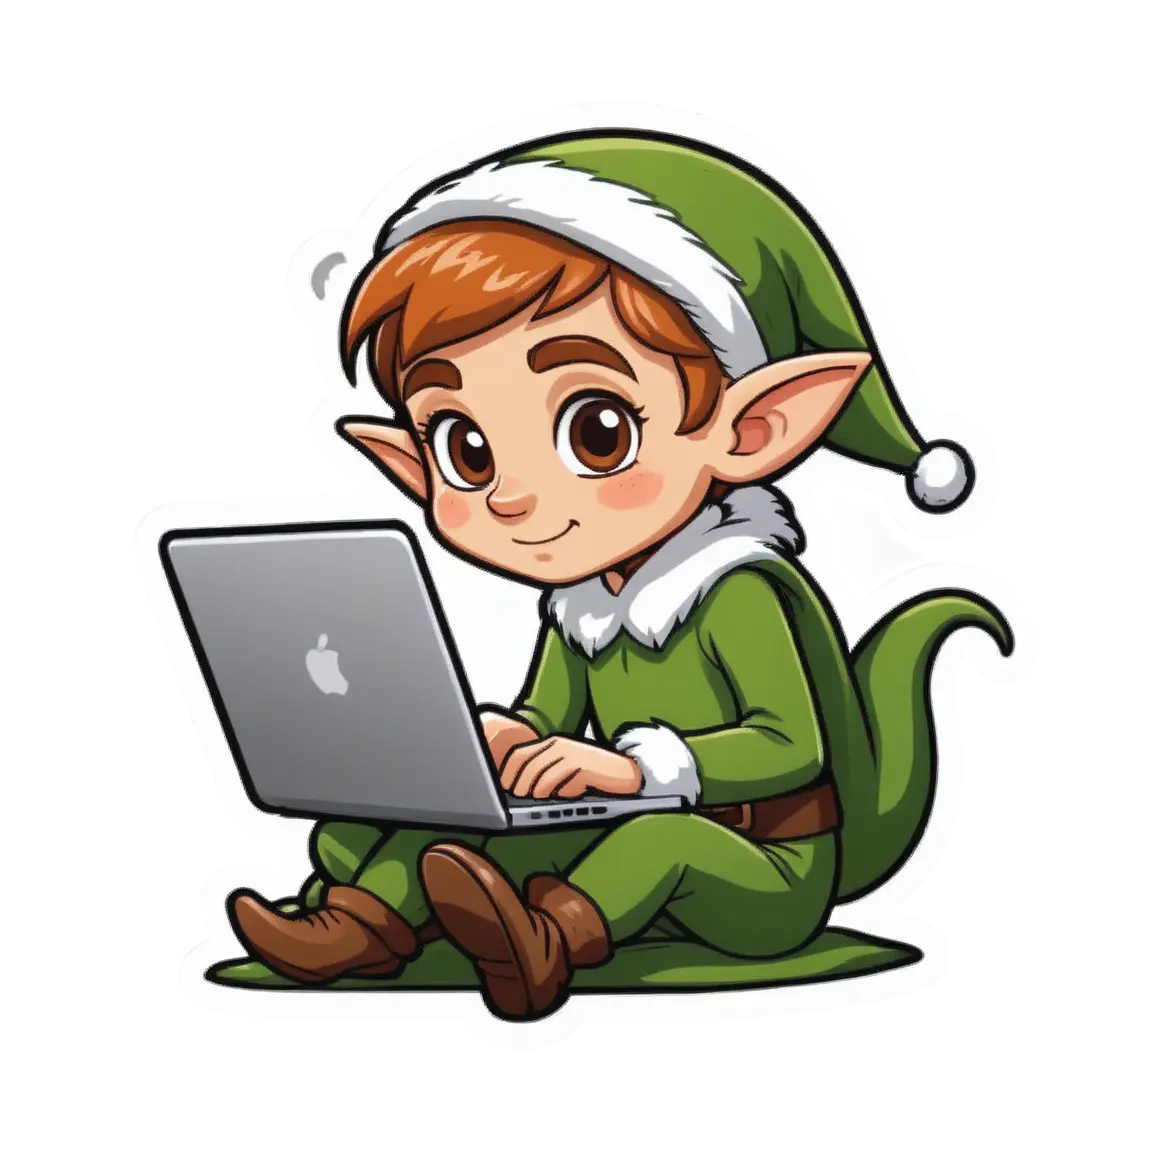 An elf using a laptop